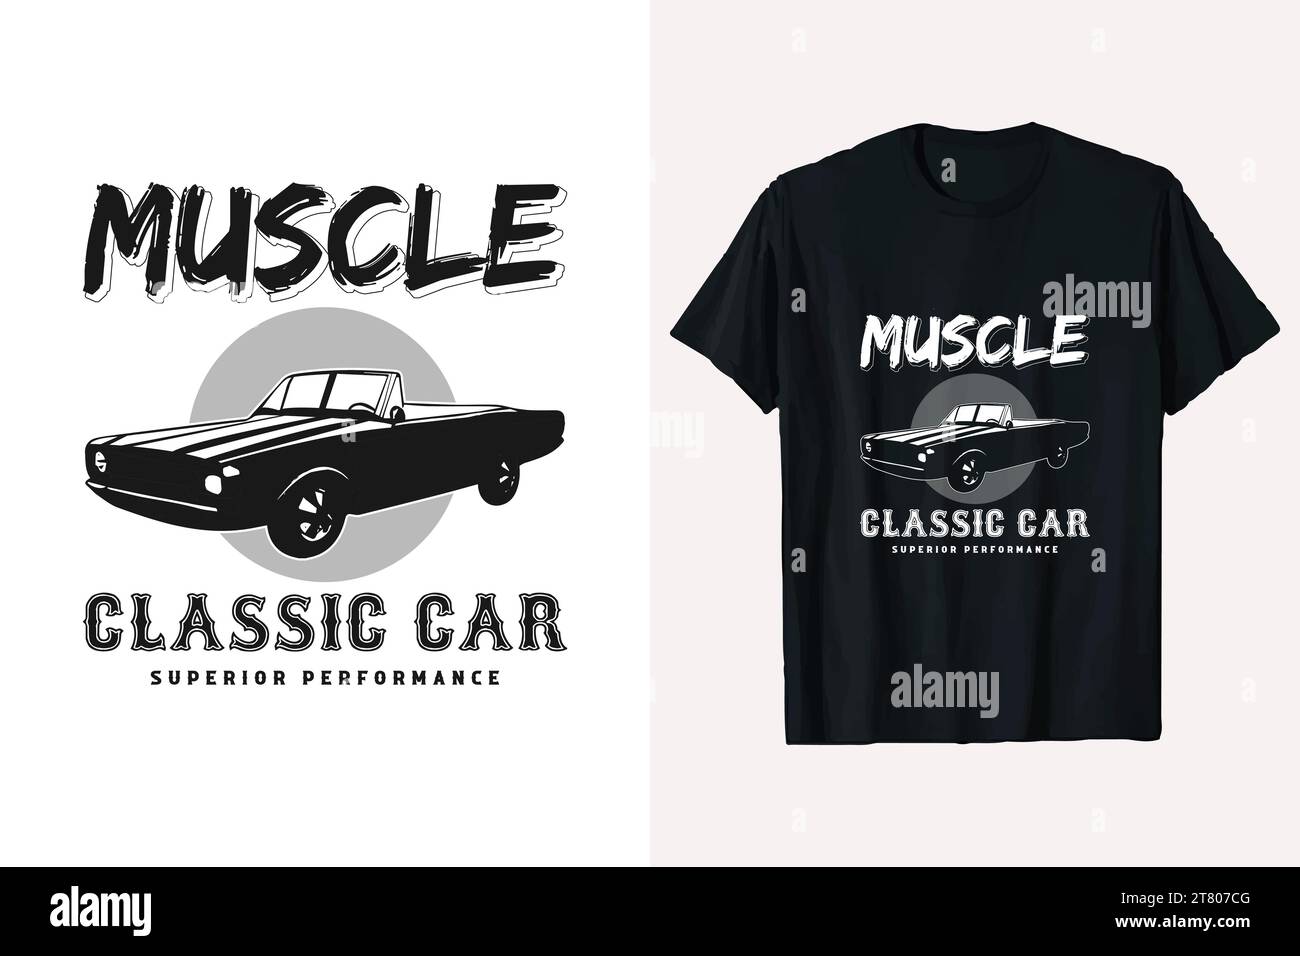 Grafica del design della t-shirt vettoriale Muscle car classica americana. tshirt per file in bianco e nero pronta per la stampa. Illustrazione Vettoriale